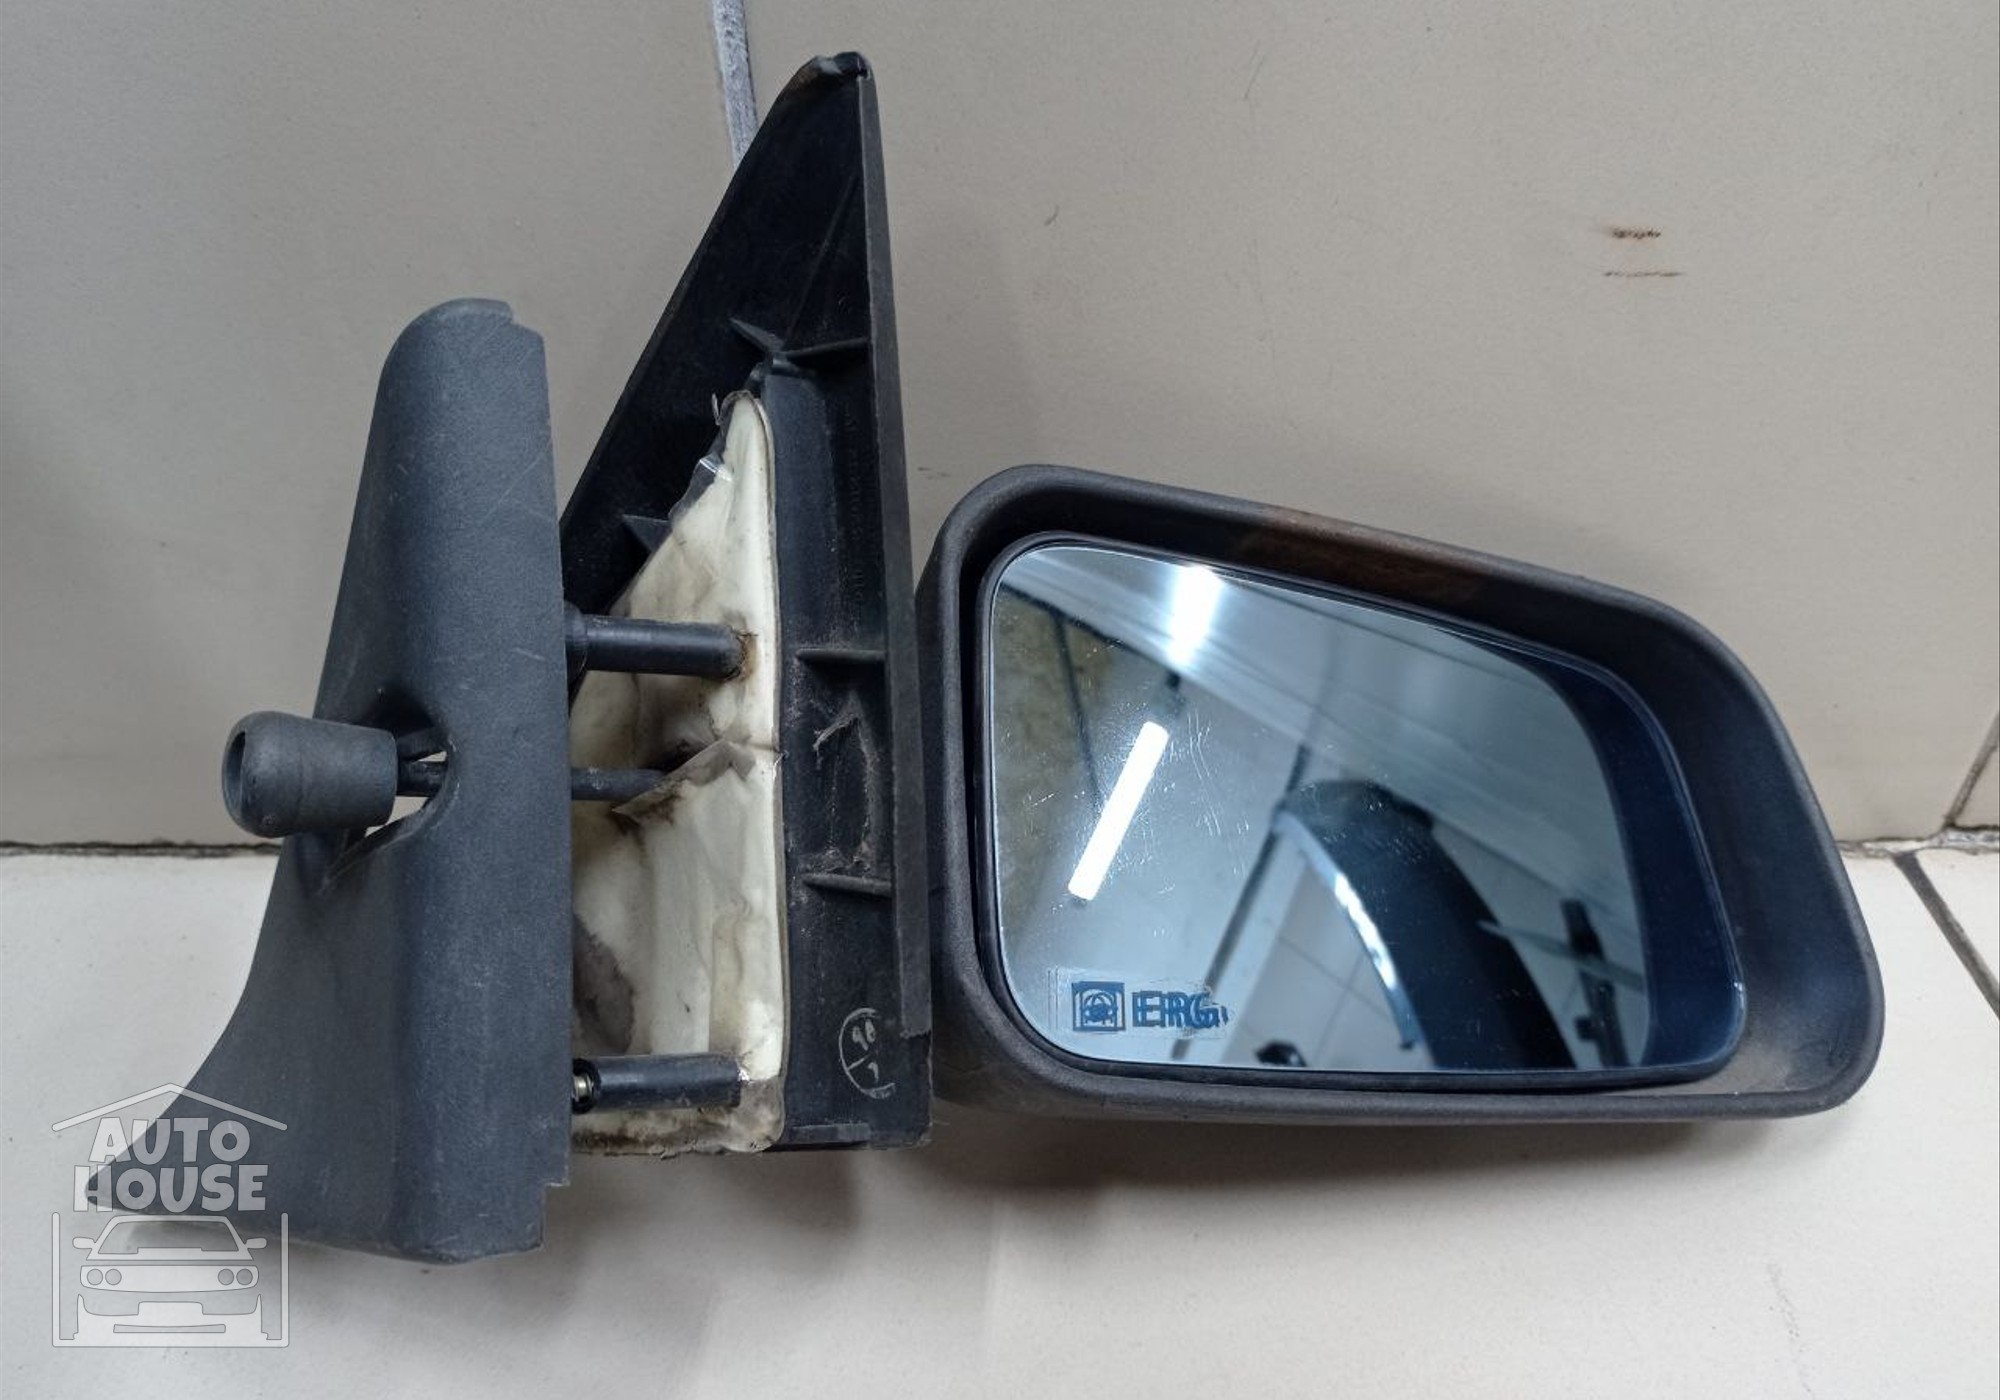 2110820125210 Зеркало заднего вида боковое правое механическое для Lada 2112